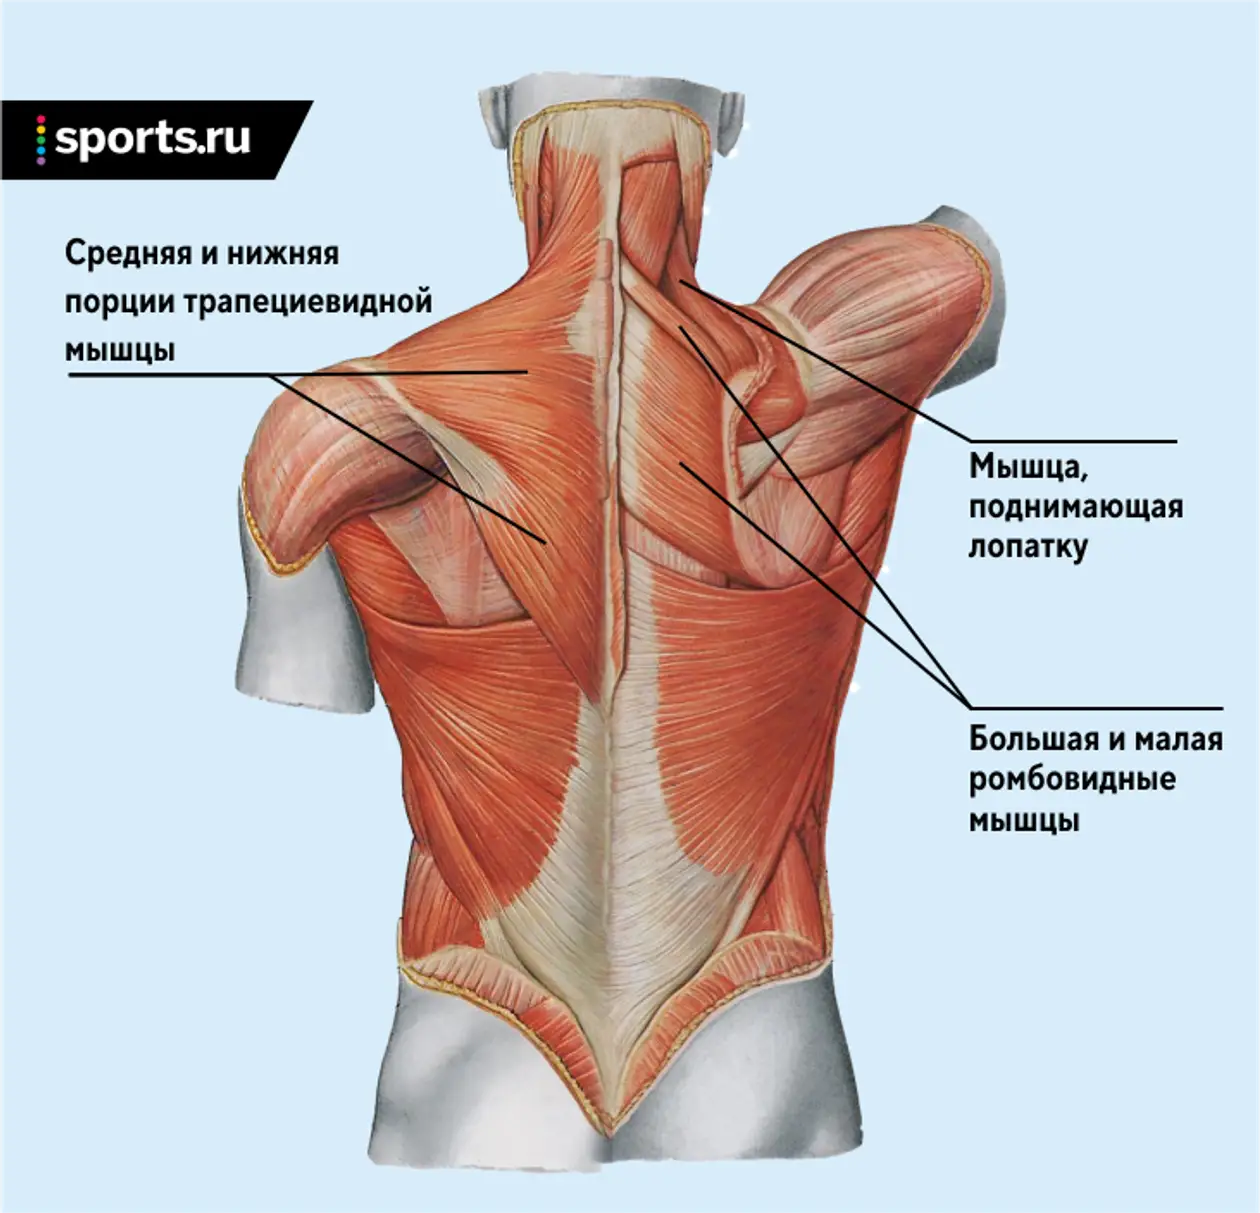 Трапециевидная мышца спины функции. Трапециевидная мышца спины анатомия. Трапециевидные мышцы верхняя средняя нижняя. Мышца поднимающая лопатку. Поднятие лопатки